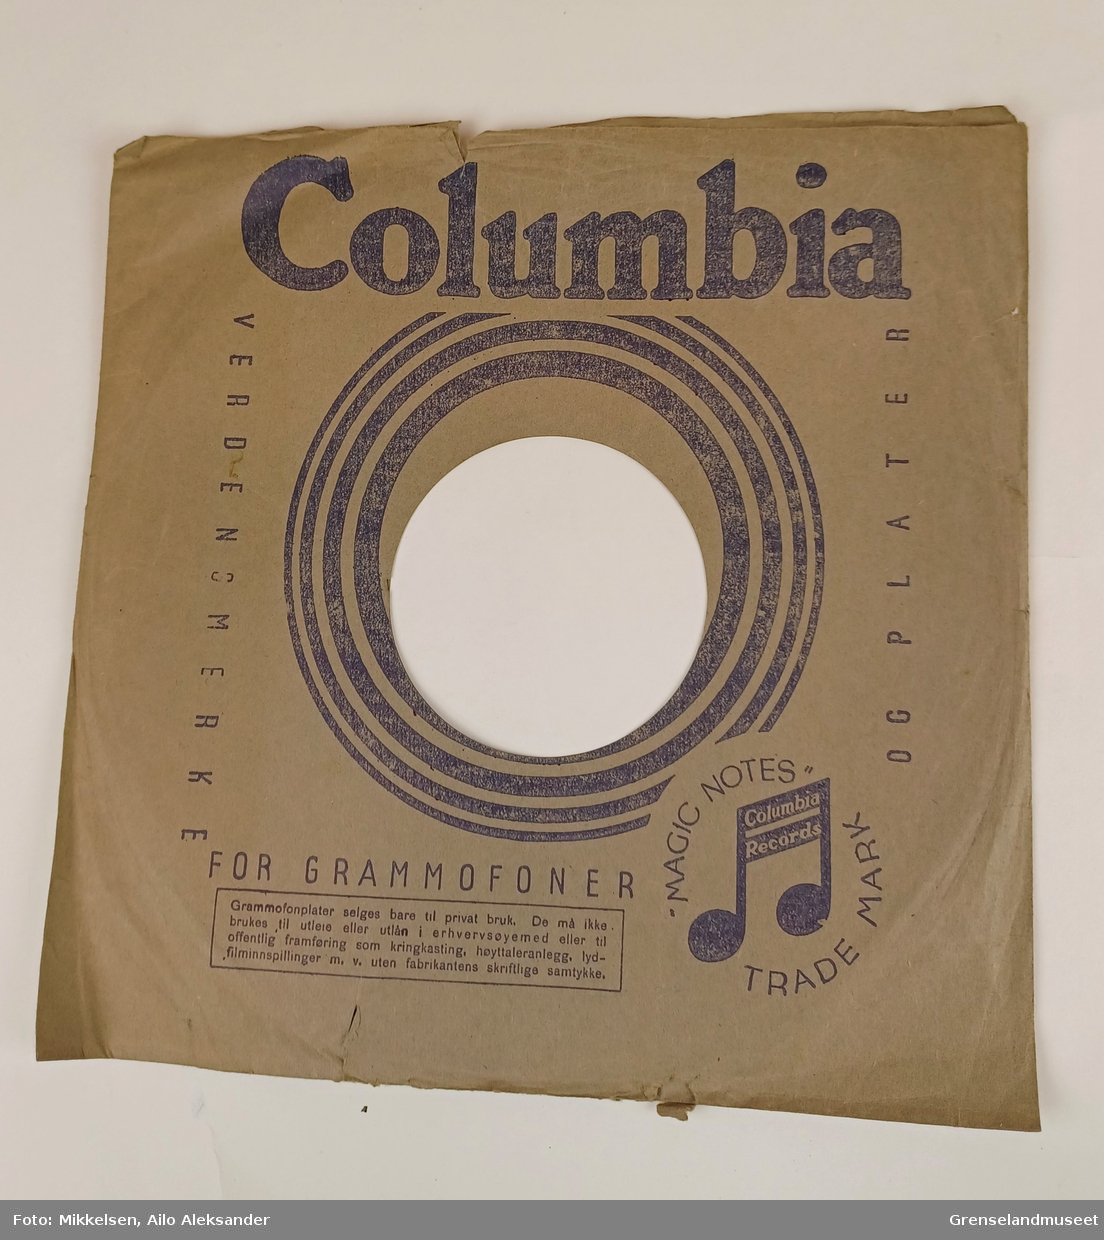 Plate: Columbia overskrift og illustrasjon. 
           Magic Notes logoen som er en note.
